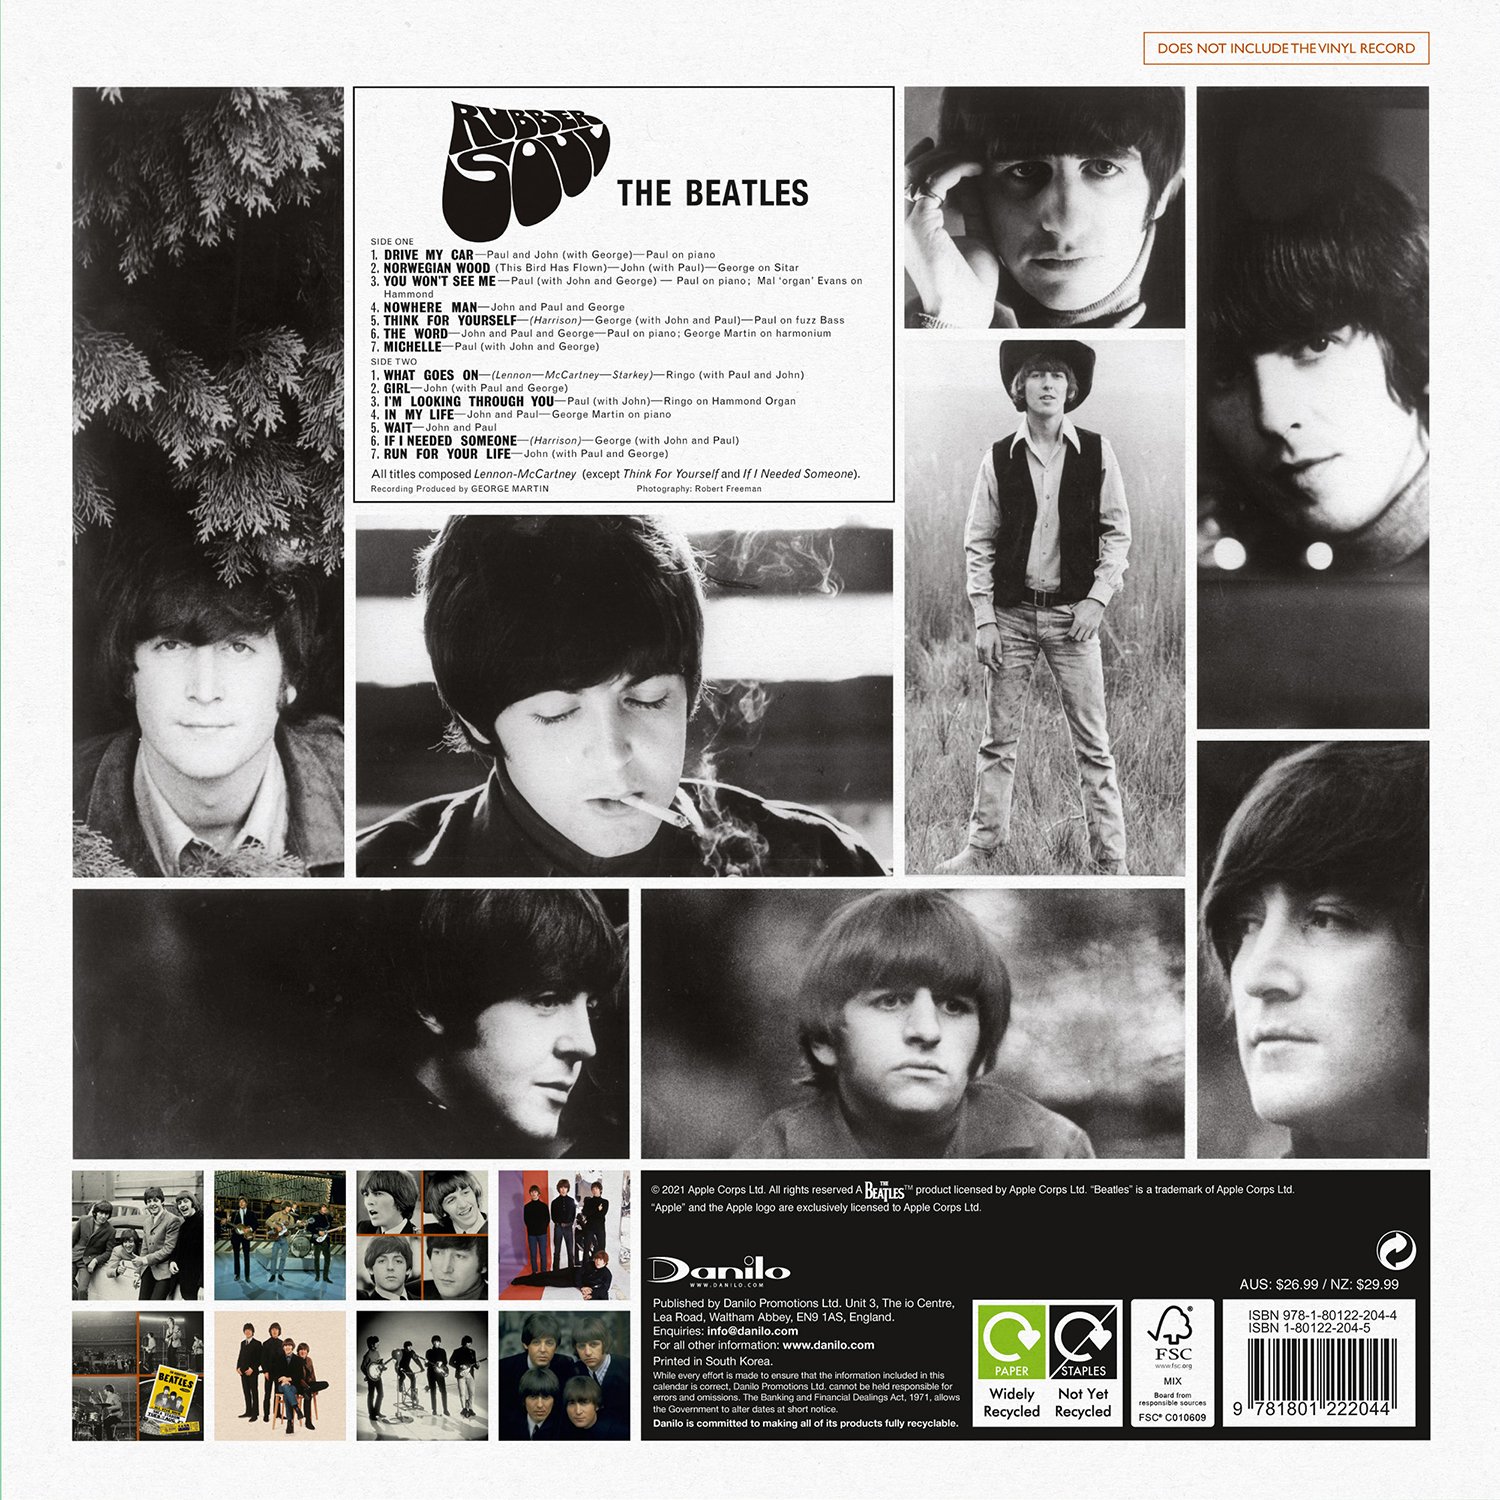 비틀즈 (The Beatles) - 2022년 벽걸이 캘린더 콜렉터스 에디션 - 레코드 슬리브 캘린더 (The Official Beatles Collector's Edition Record Sleeve Calendar 2022) 